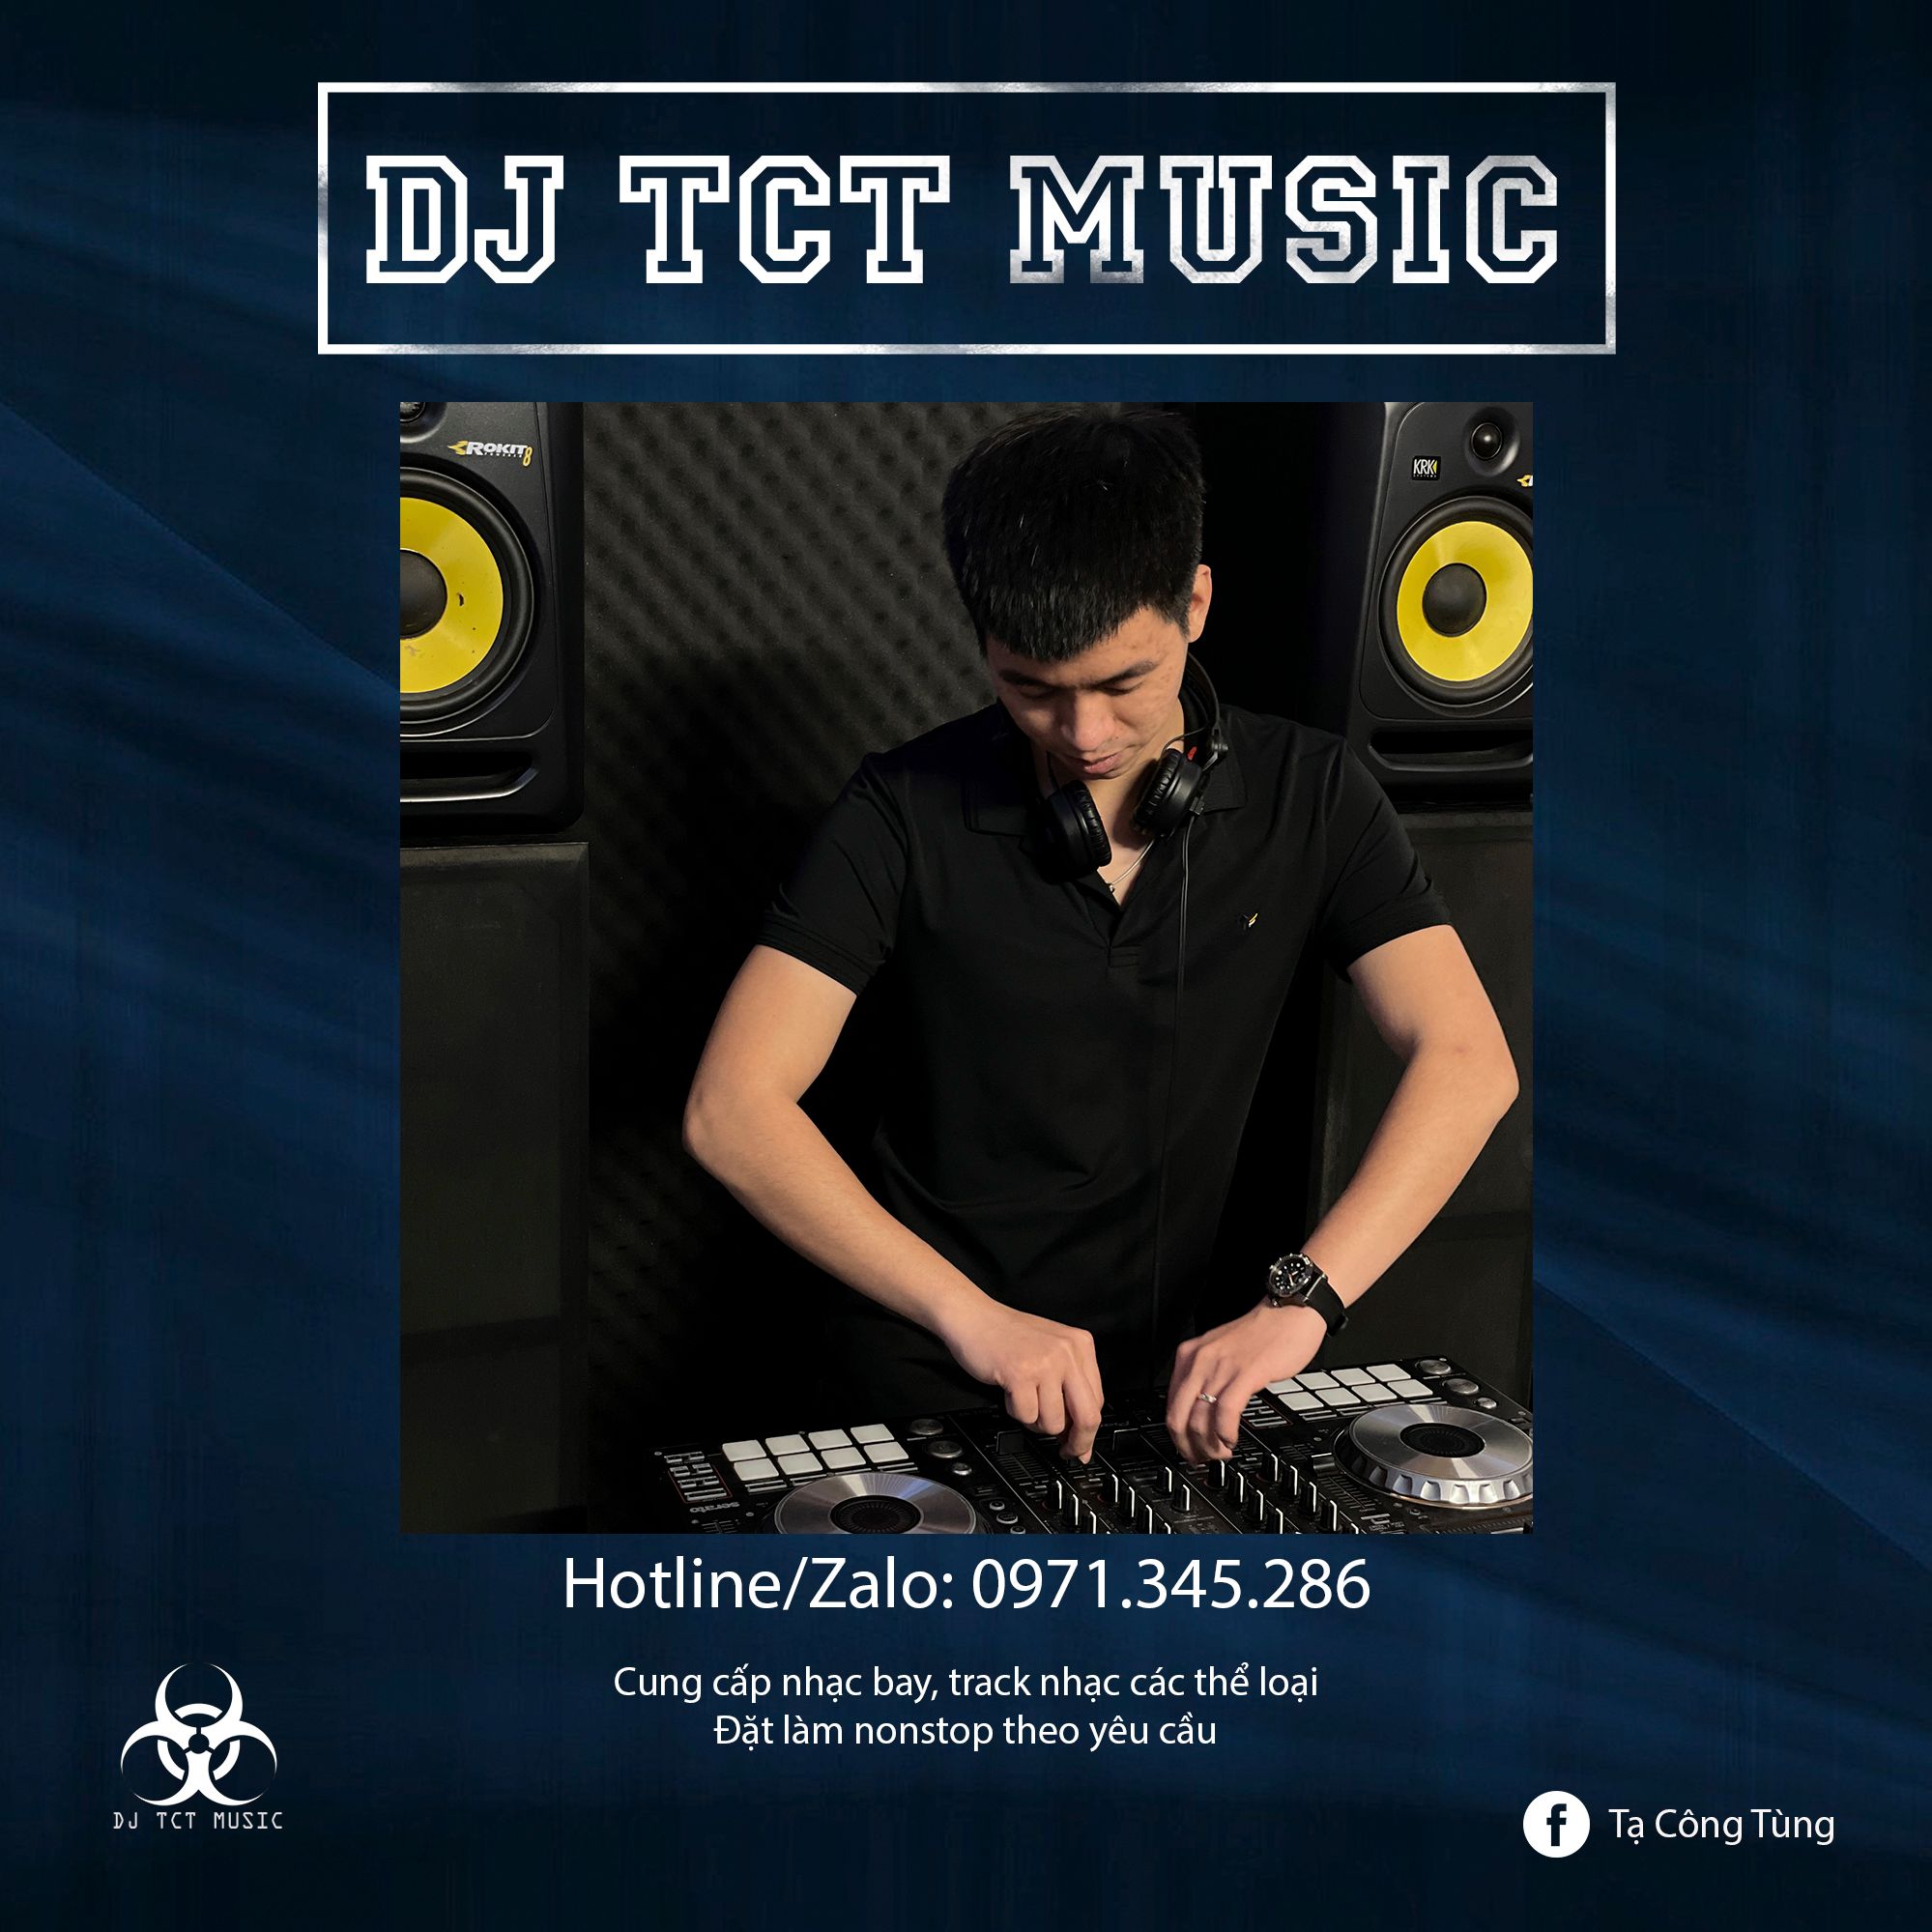 Khoasolla HÀNG TRÔI KE 2022 _ DJ TCT MUSIC 0971345286 _ NONSTOP BAY PHÒNG GIỌT NƯỚC CHẢY DỊU ÊM